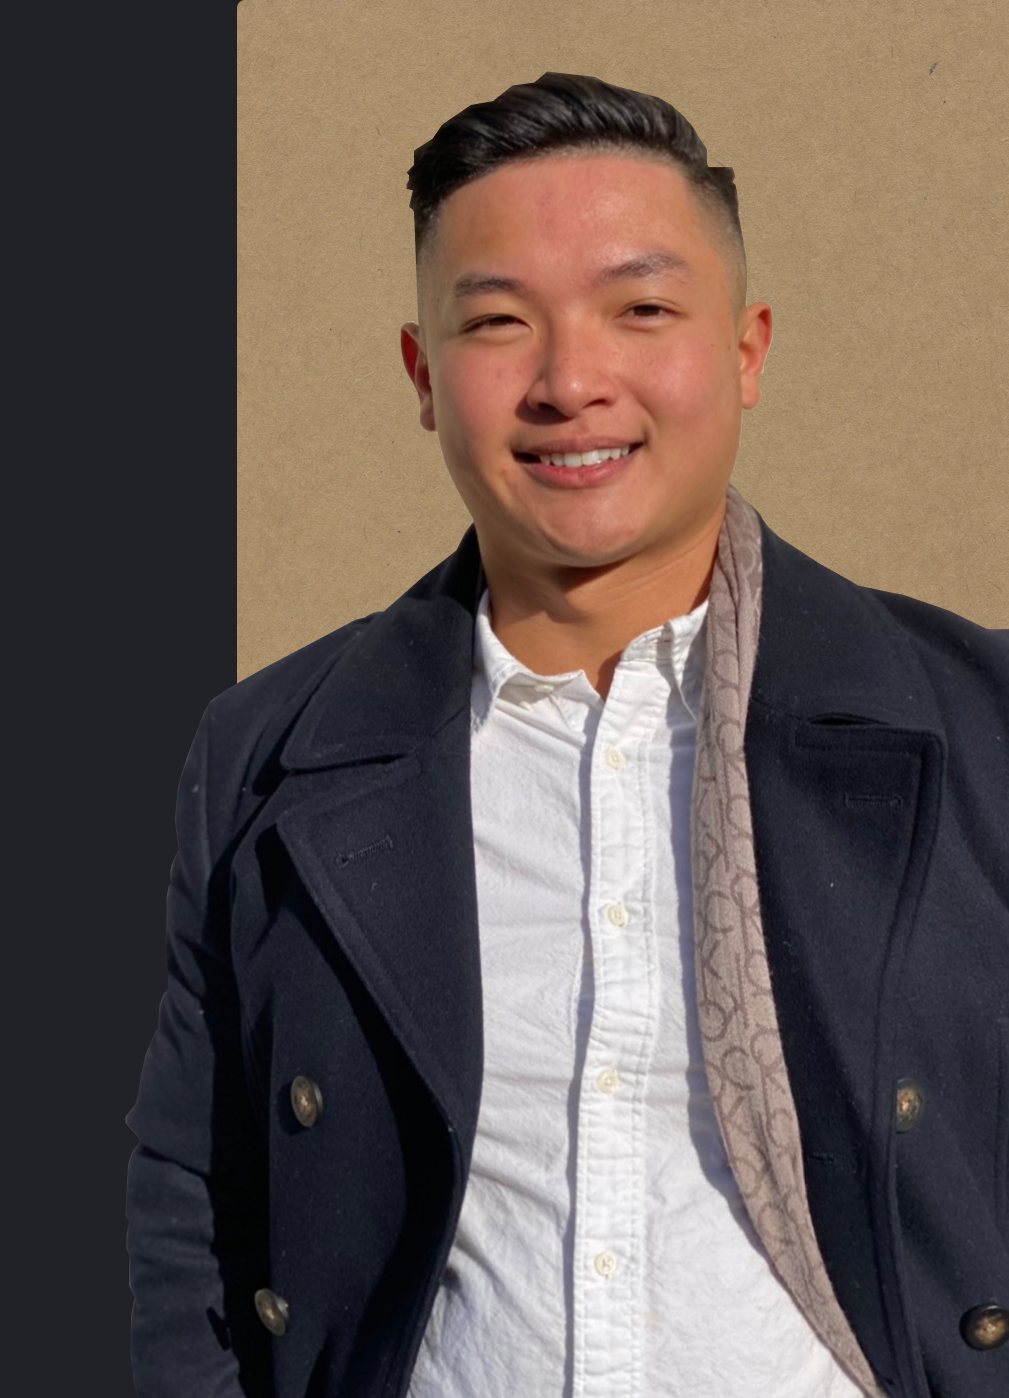 Keven Nguyen's portfolio profile image